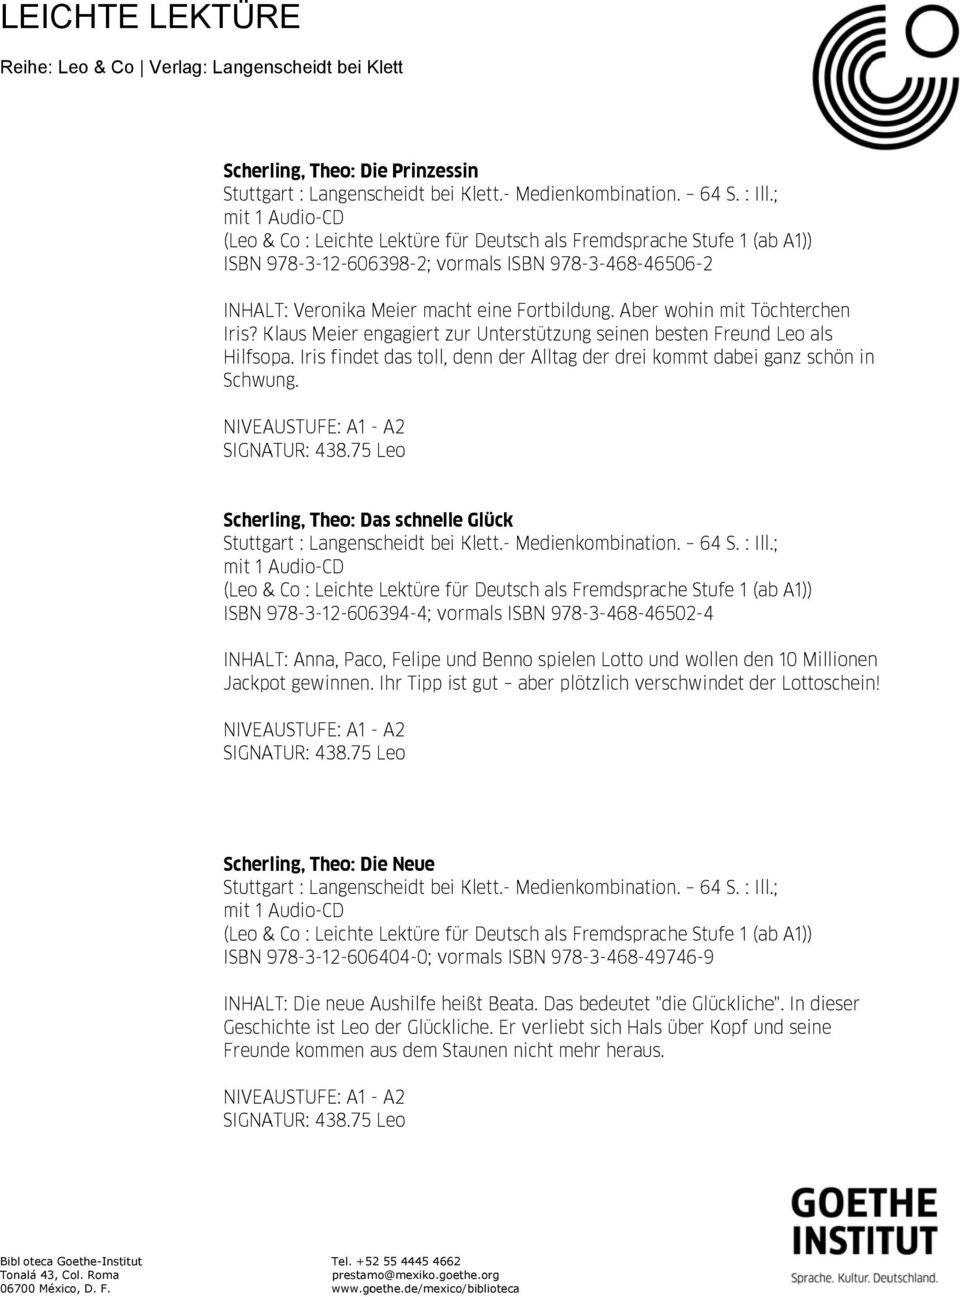 Scherling, Theo: Das schnelle Glück Fremdsprache Stufe 1 (ab ISBN 978-3-12-606394-4; vormals ISBN 978-3-468-46502-4 INHALT: Anna, Paco, Felipe und Benno spielen Lotto und wollen den 10 Millionenn